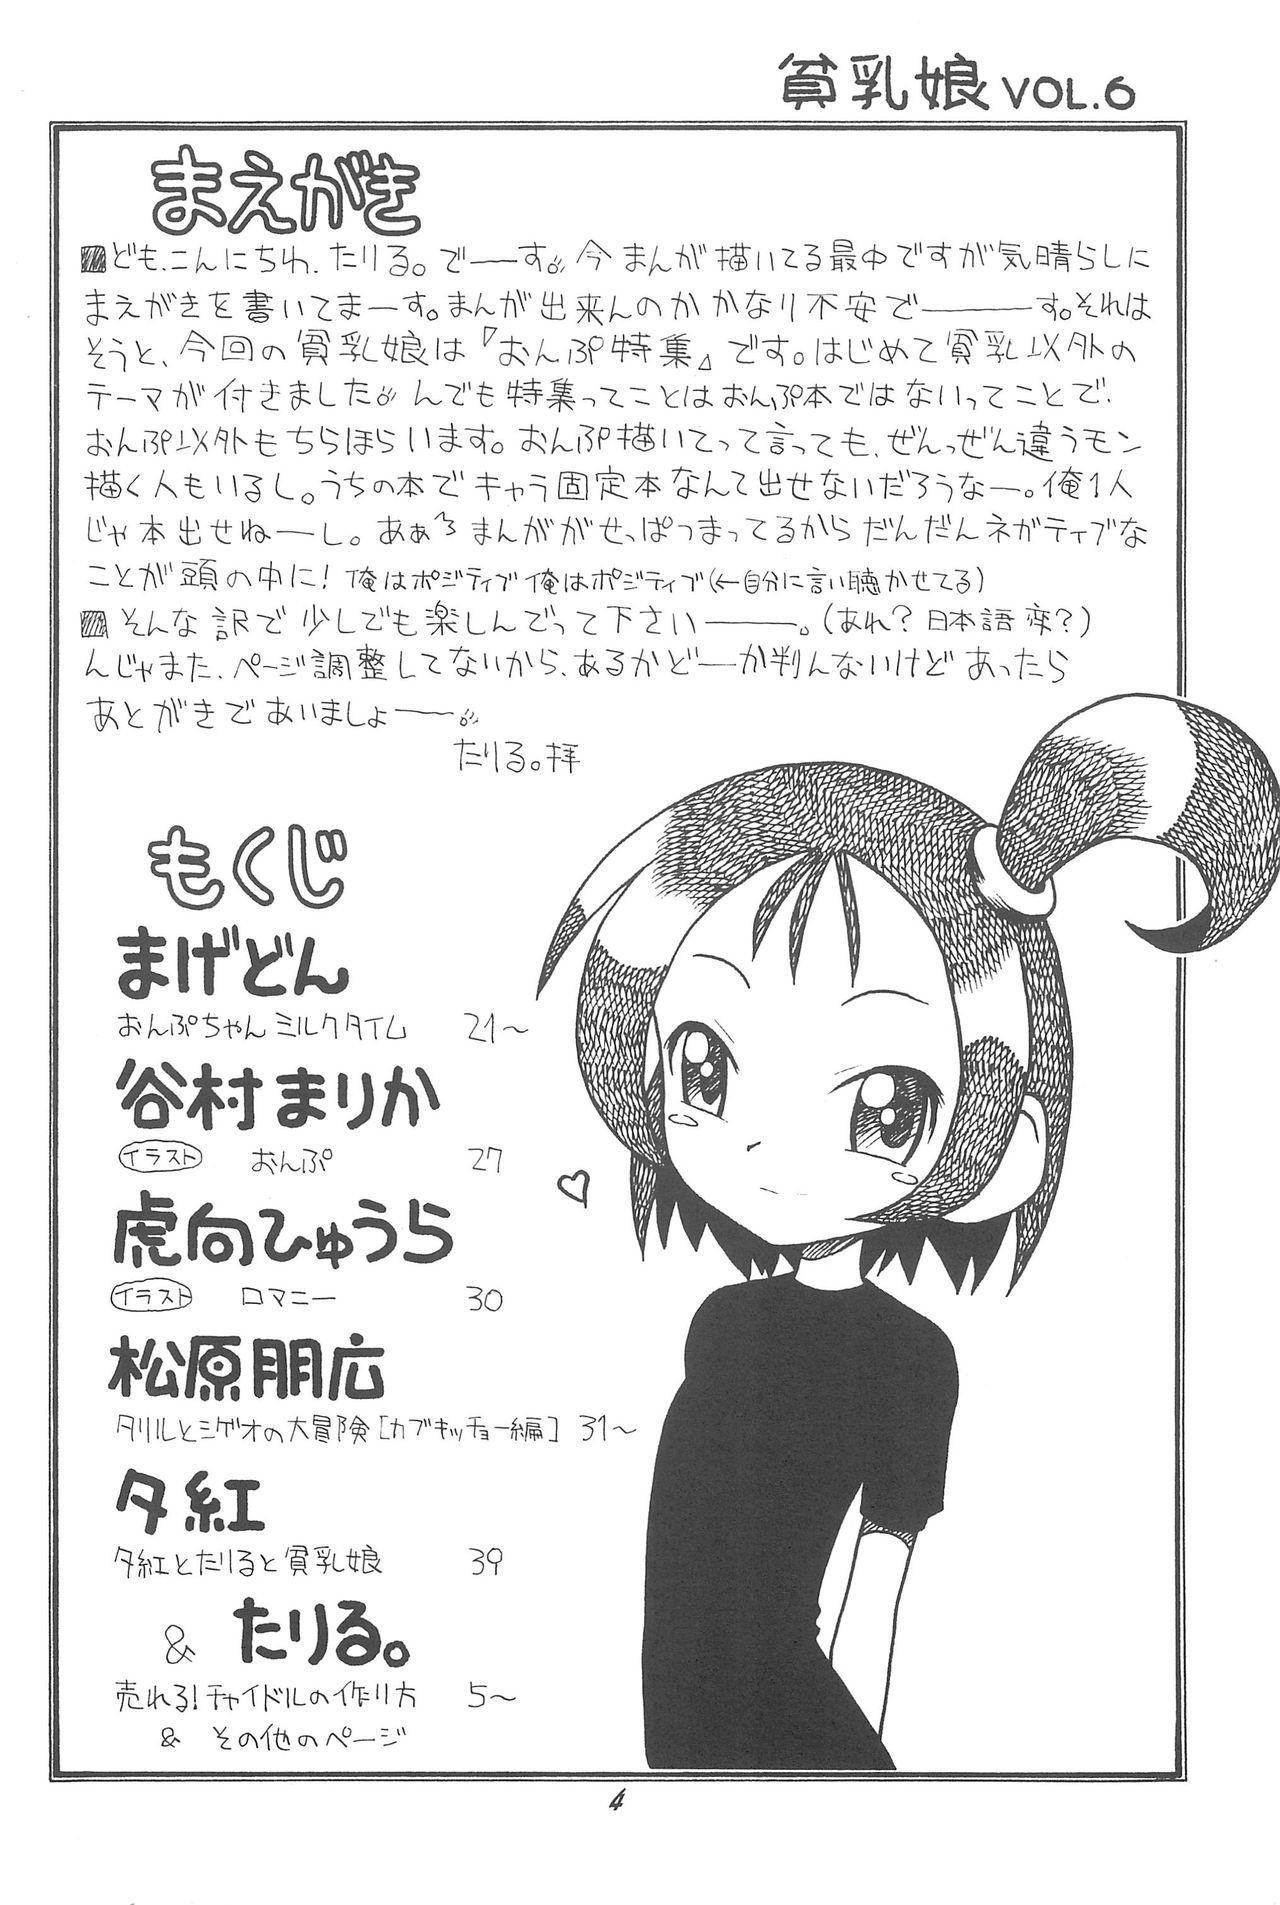 Ruiva Hinnyuu Musume 06 - Ojamajo doremi Ftvgirls - Page 6